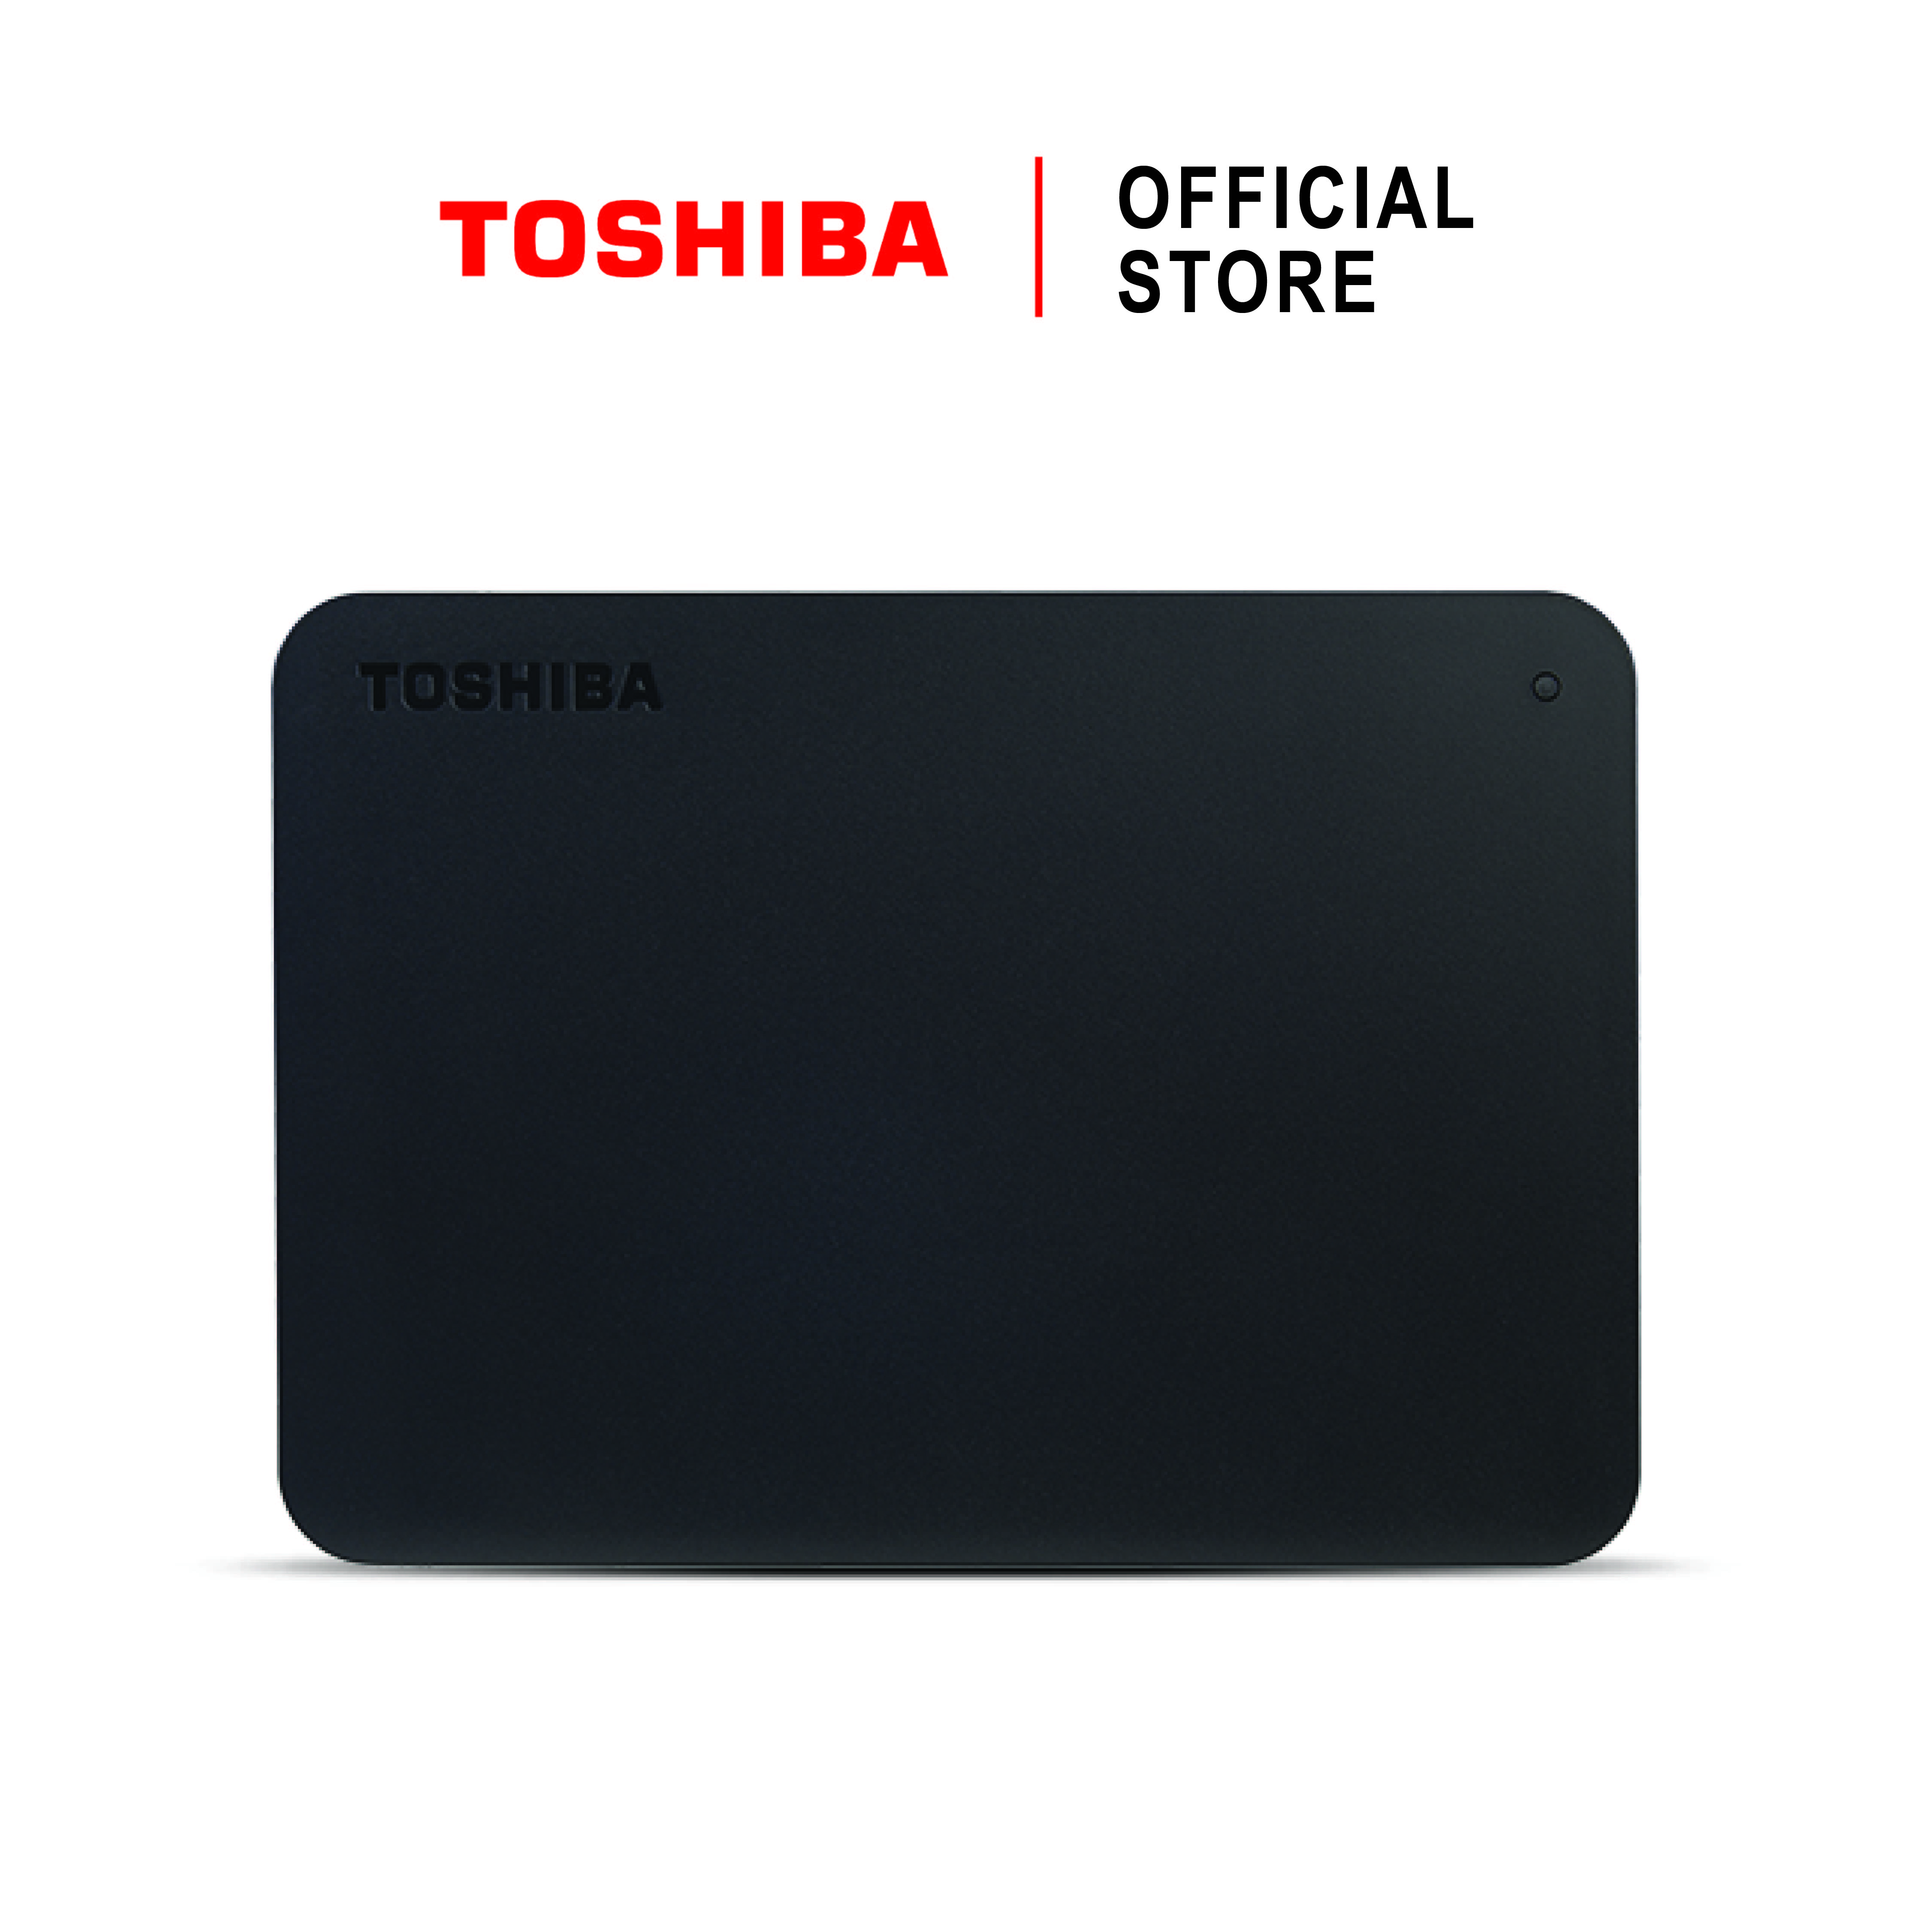 Toshiba External Harddrive (4TB) รุ่น Canvio Basics A3 External HDD Black 4TB USB3.2